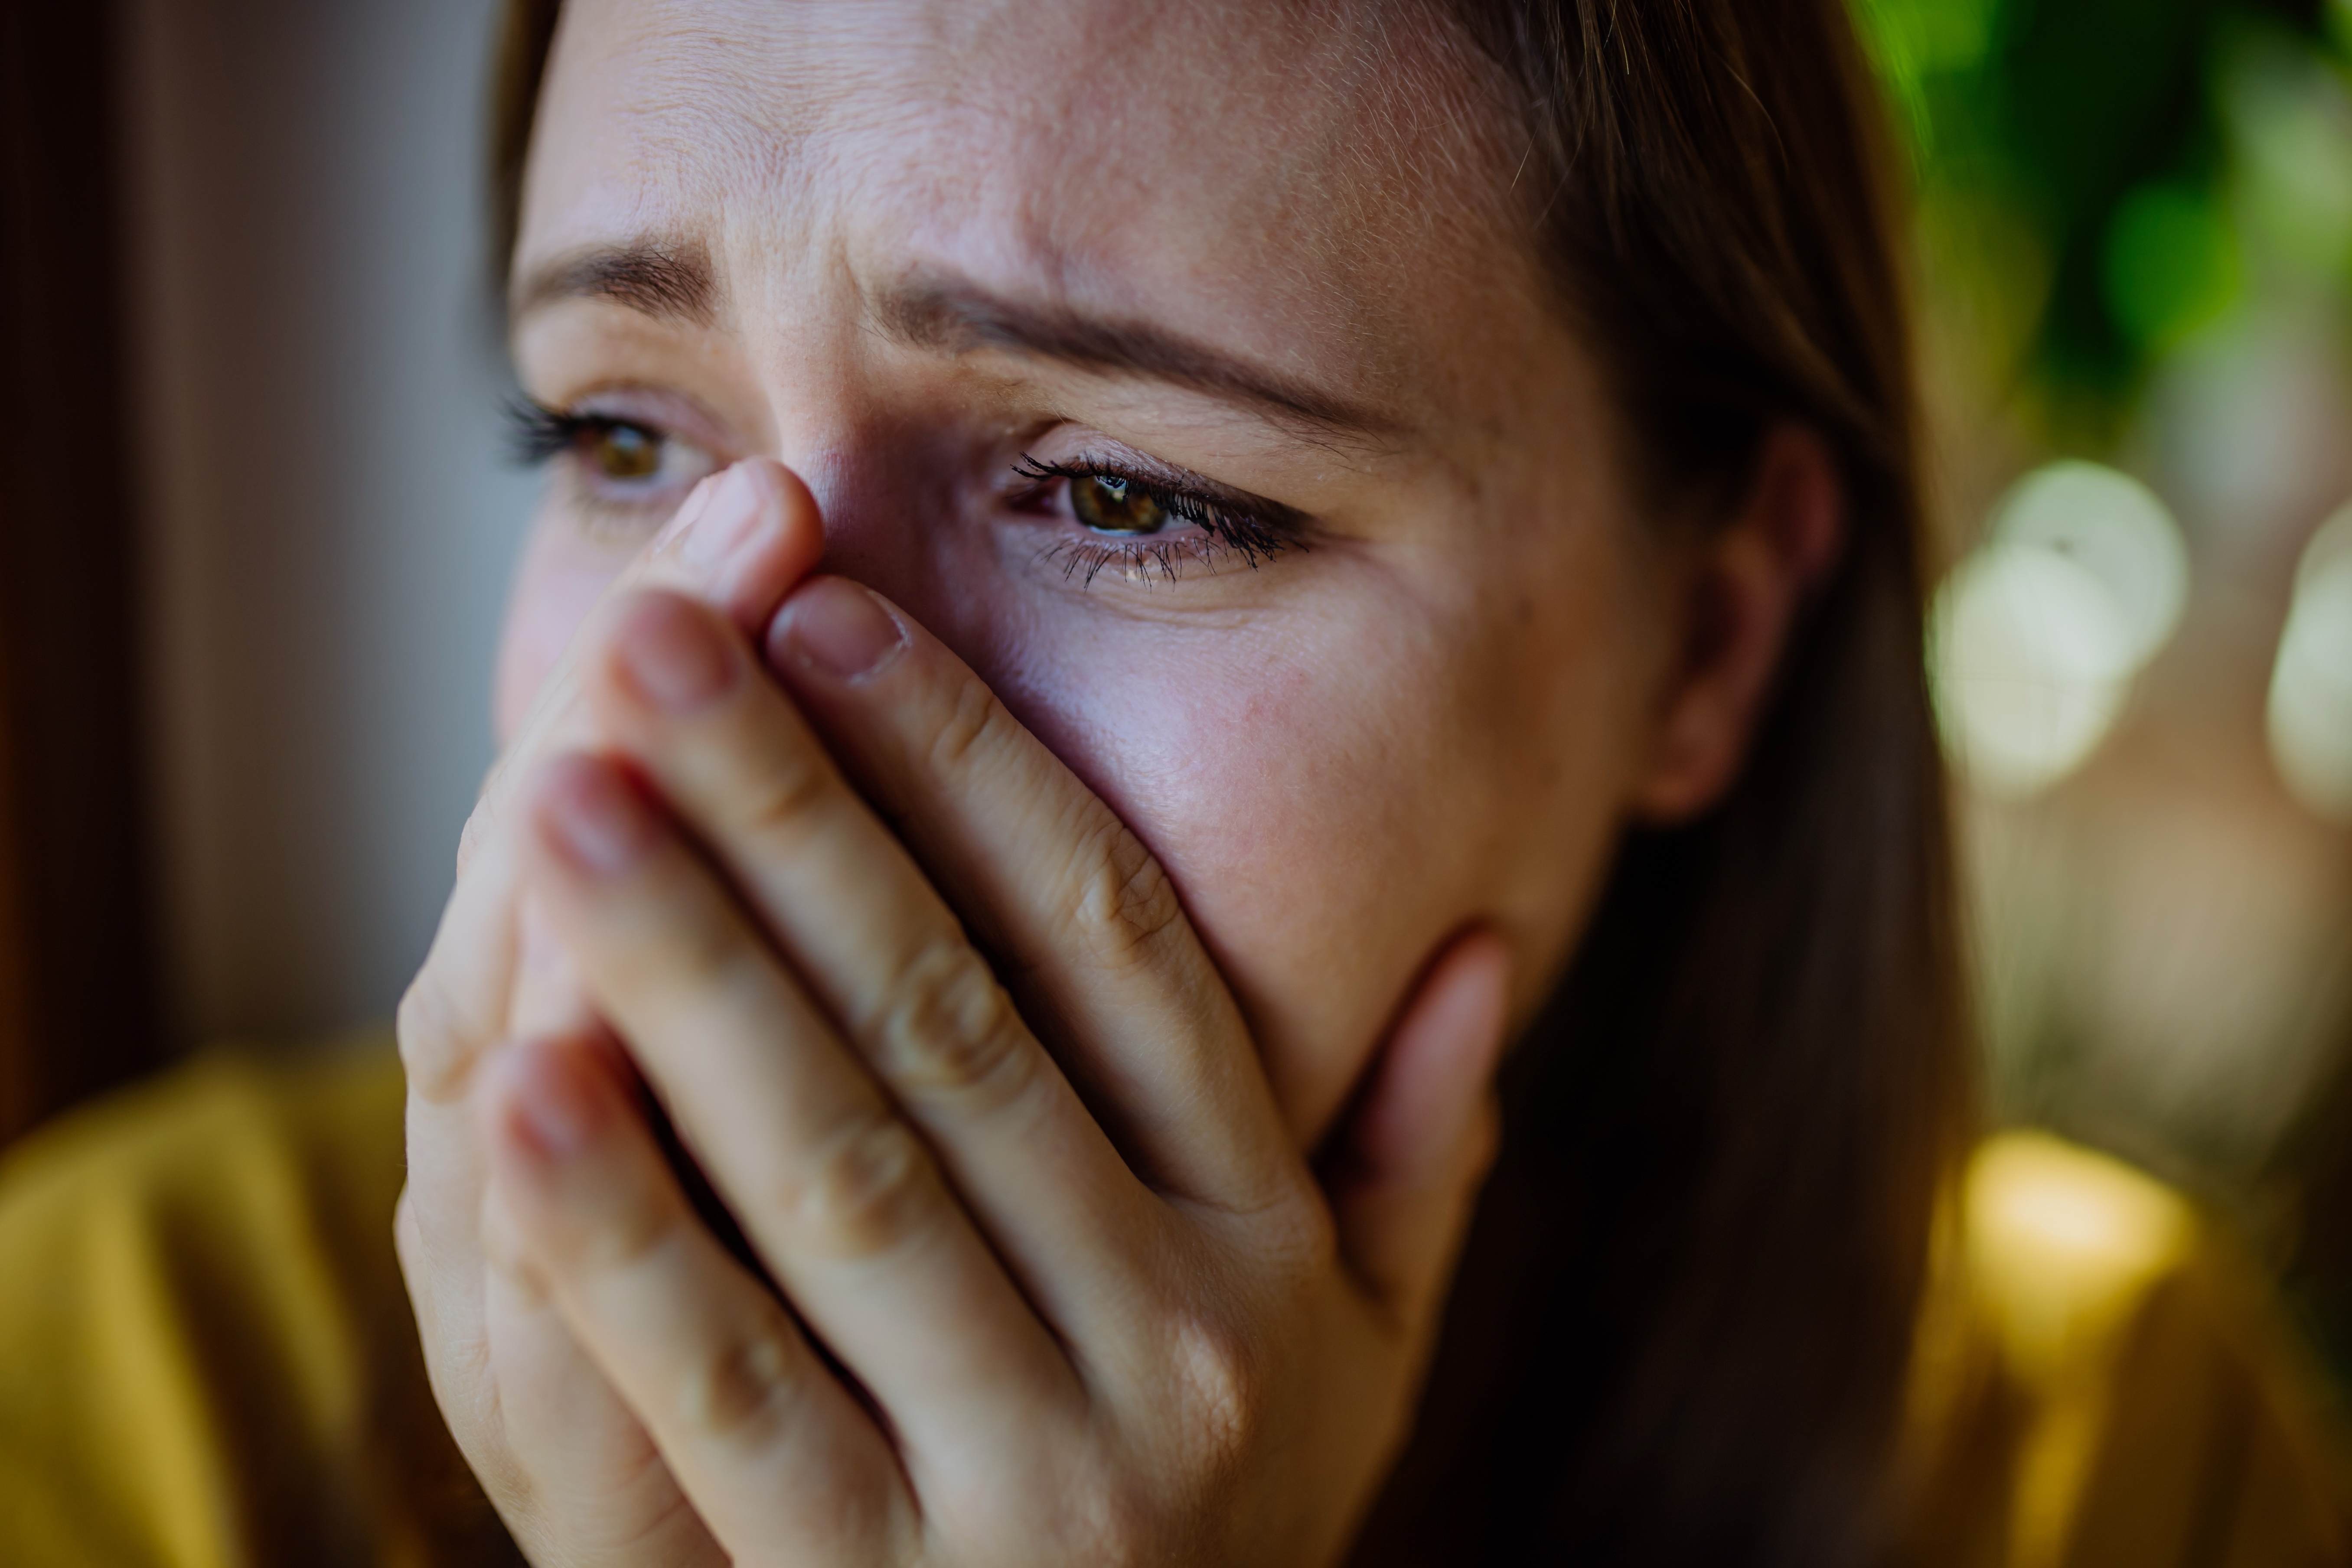 Mujer llorando. | Fuente: Shutterstock